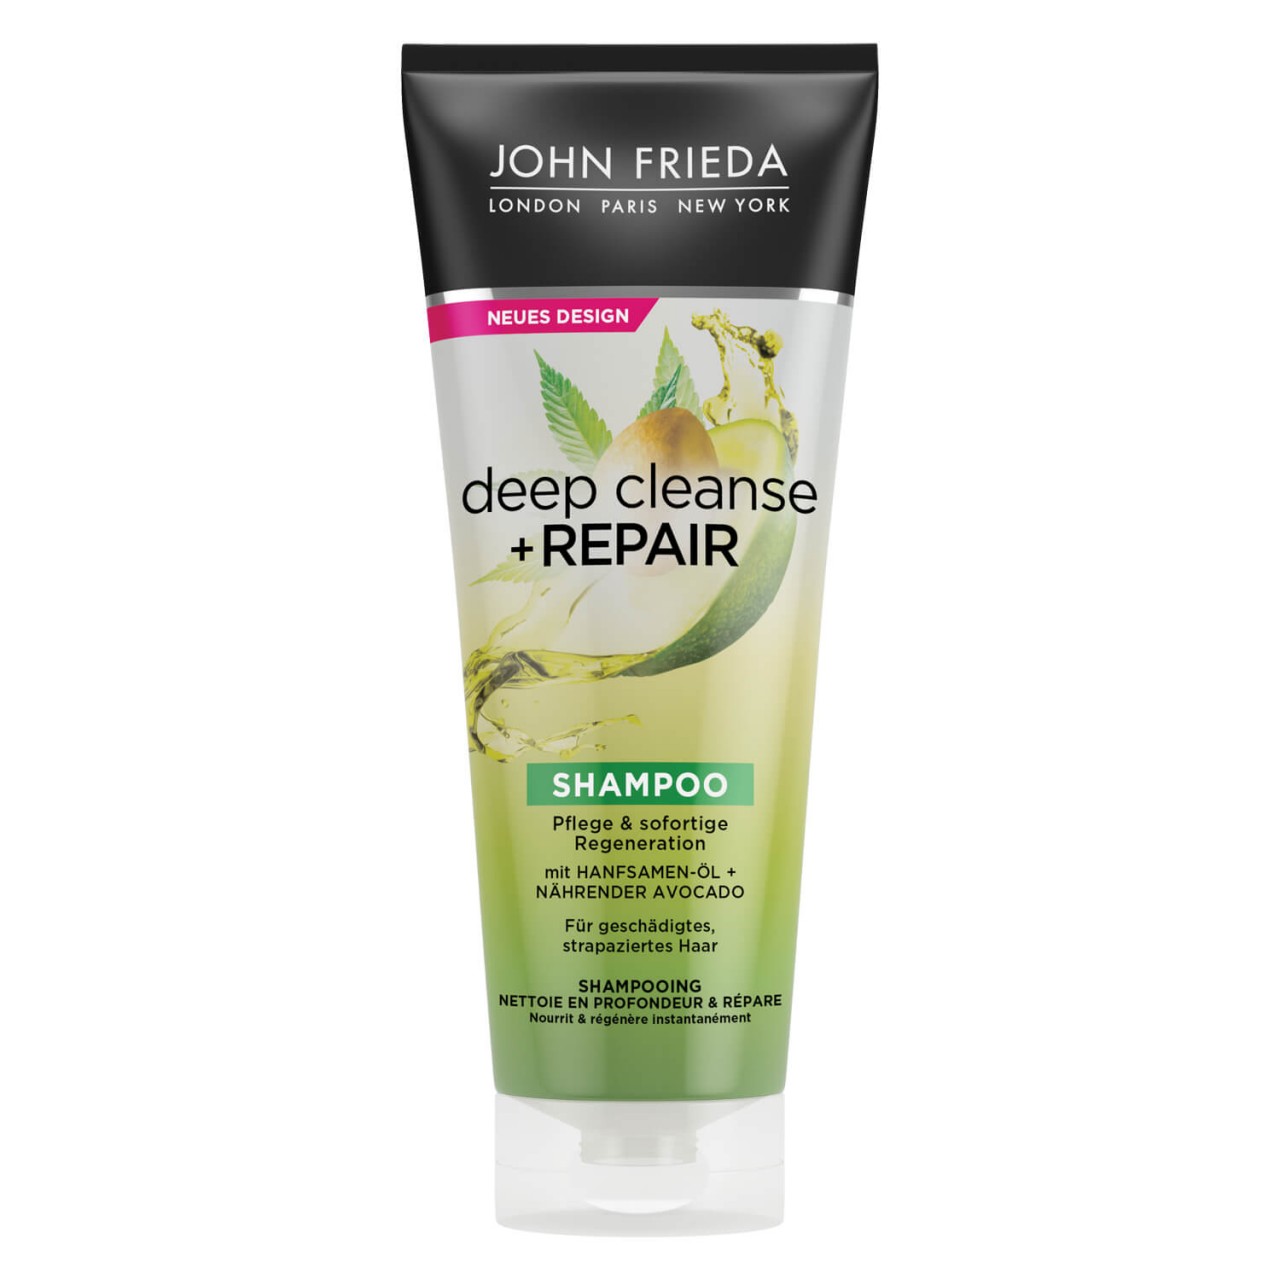 Deep Cleanse & Repair - Shampoo von John Frieda